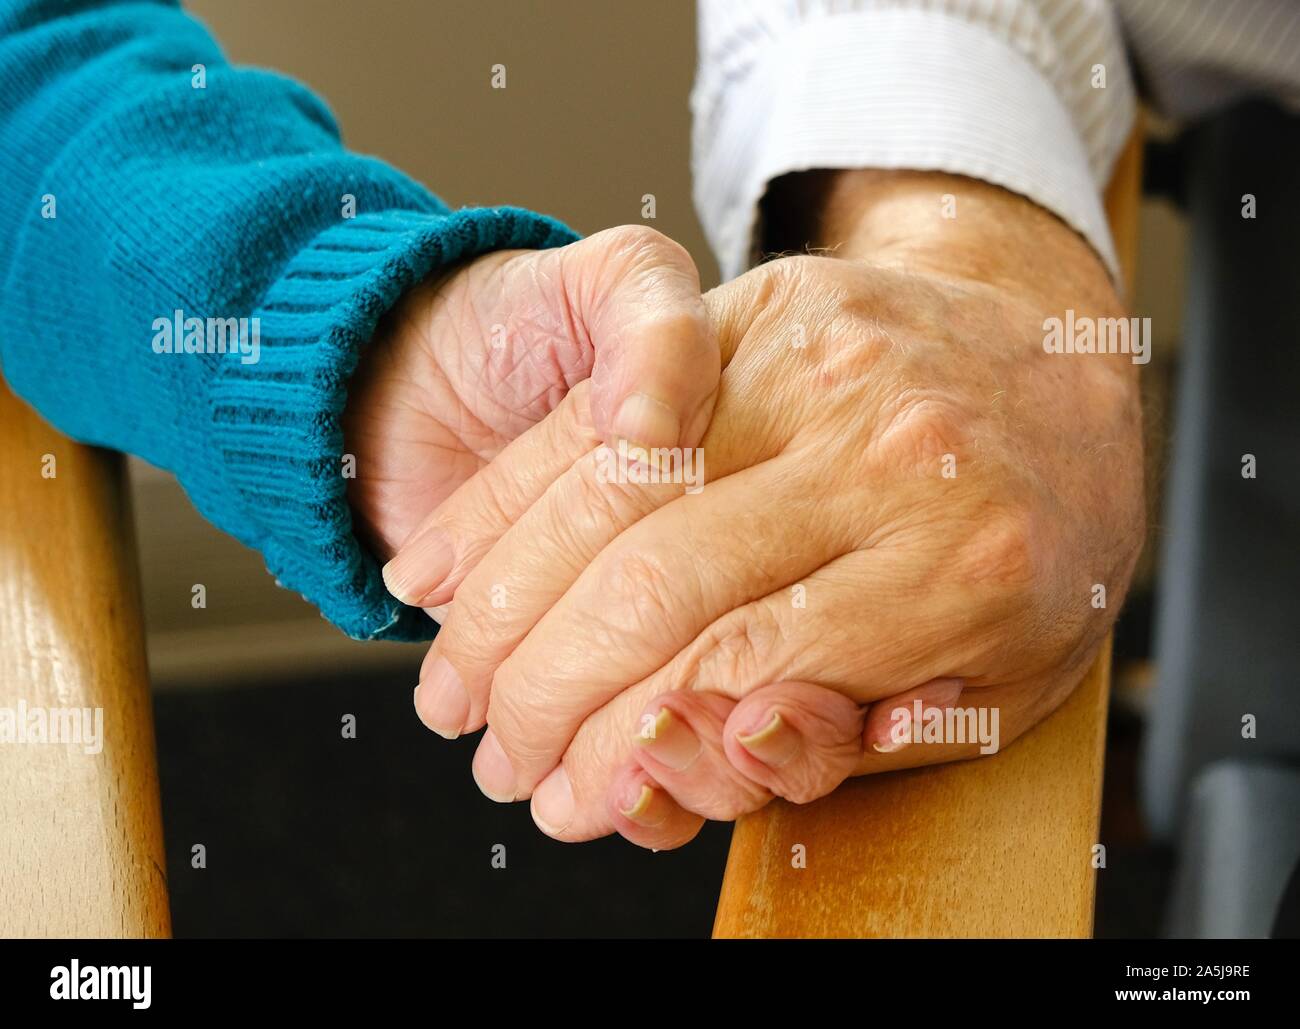 Personnes âgées amis (homme et femme) se tenant par la main dans un centre de soins Banque D'Images